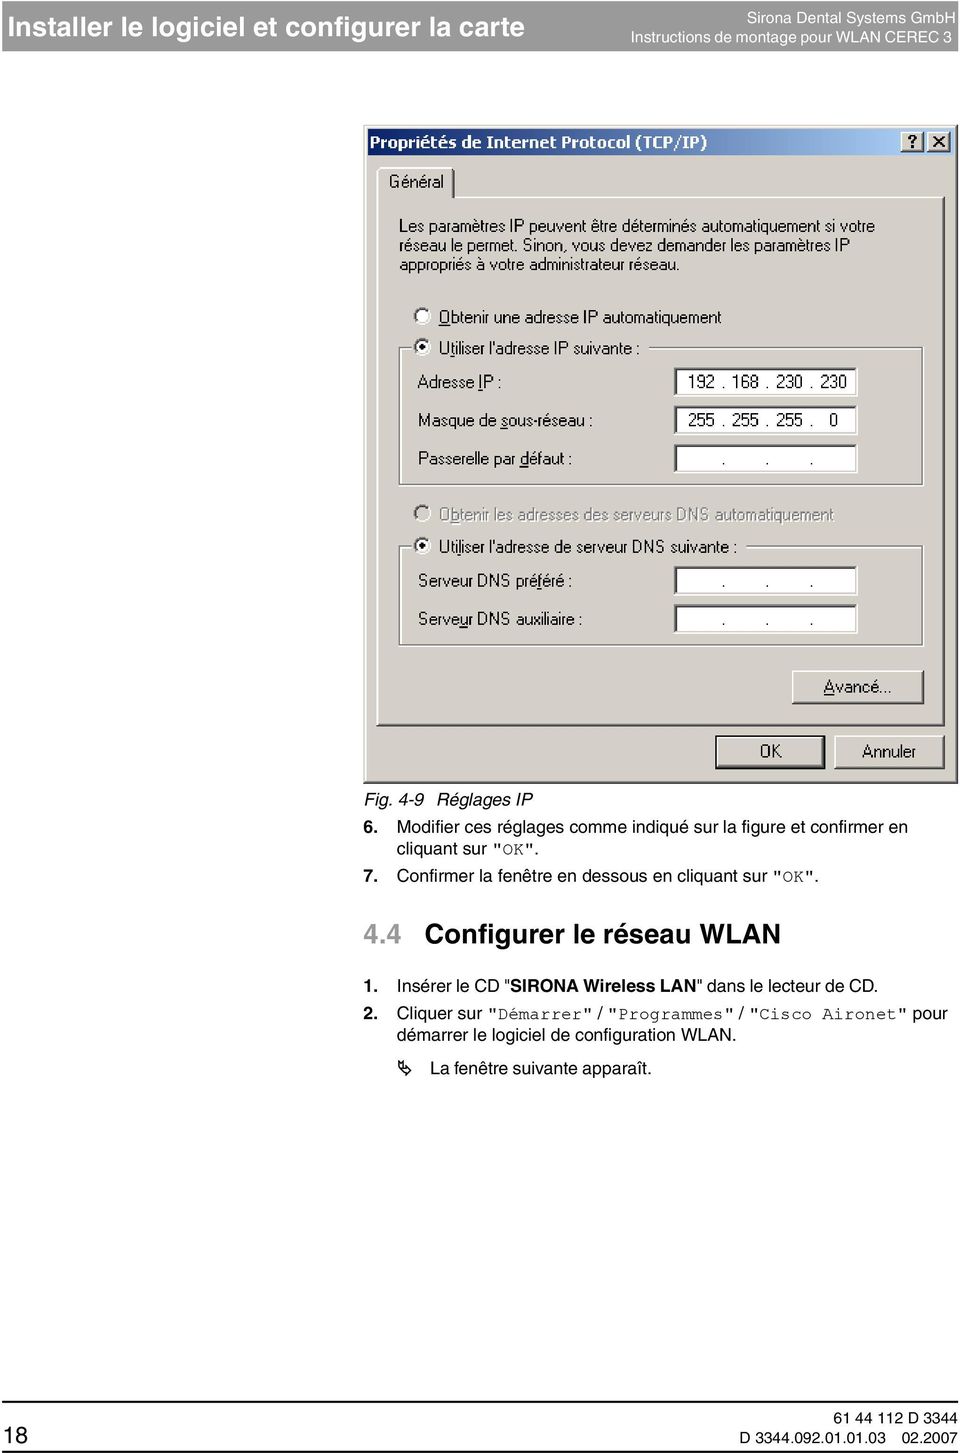 Confirmer la fenêtre en dessous en cliquant sur "OK". 4.4 Configurer le réseau WLAN 1.